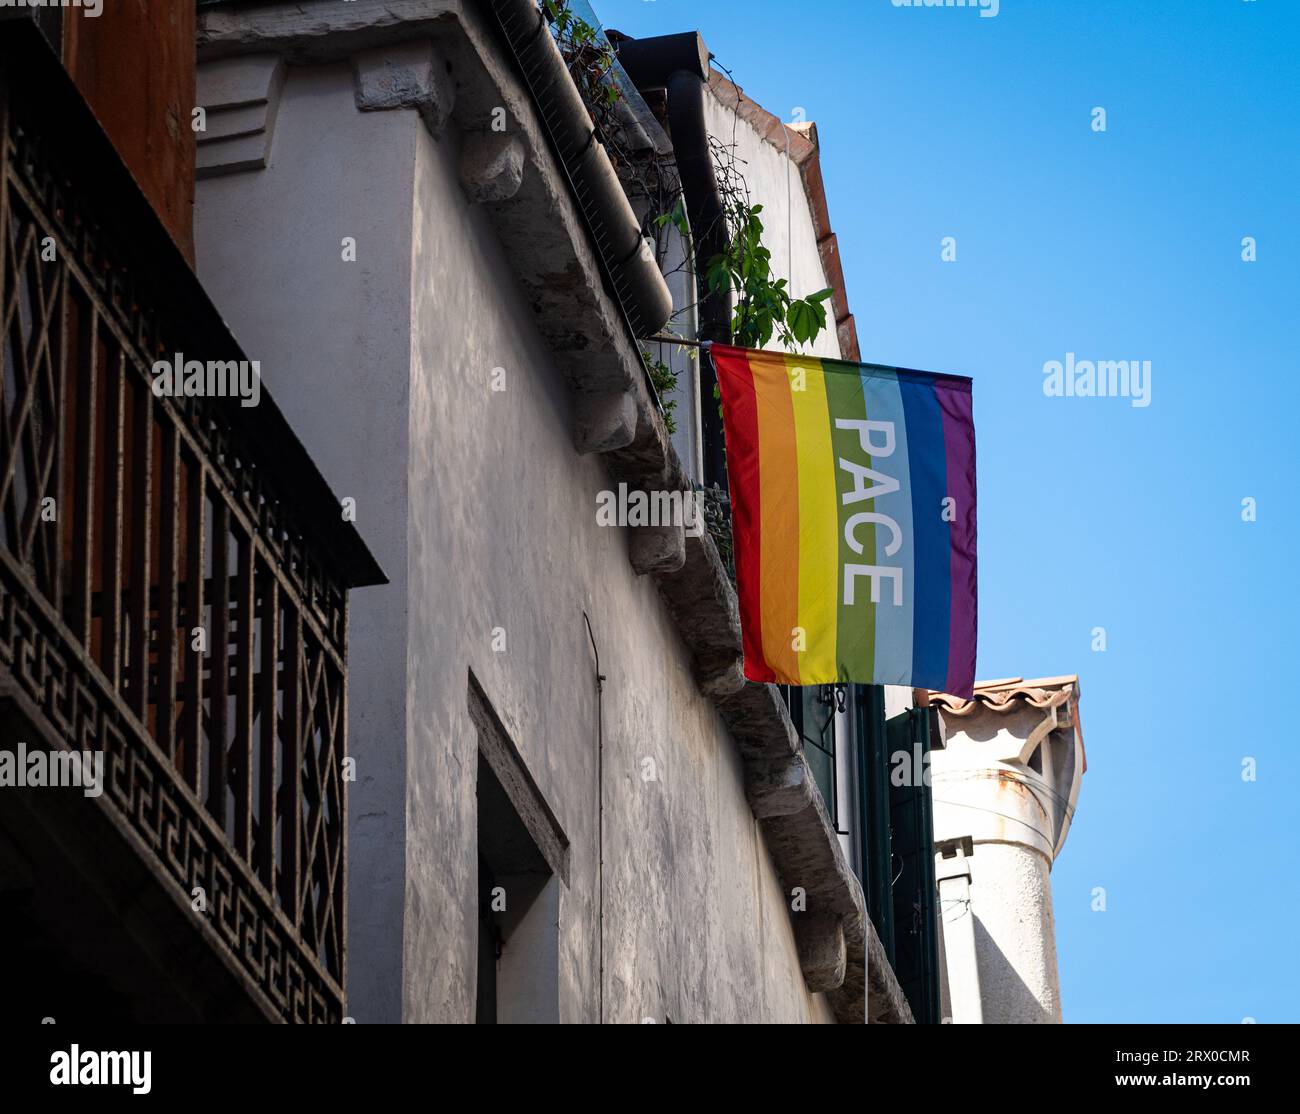 Foto eines Regenbogens PACE oder einer Friedensflagge, die hoch von einem Gebäude in Venedig hängt. Die PACE-Flagge wurde erstmals in Italien bei einem friedensmarsch 1961 verwendet. Stockfoto